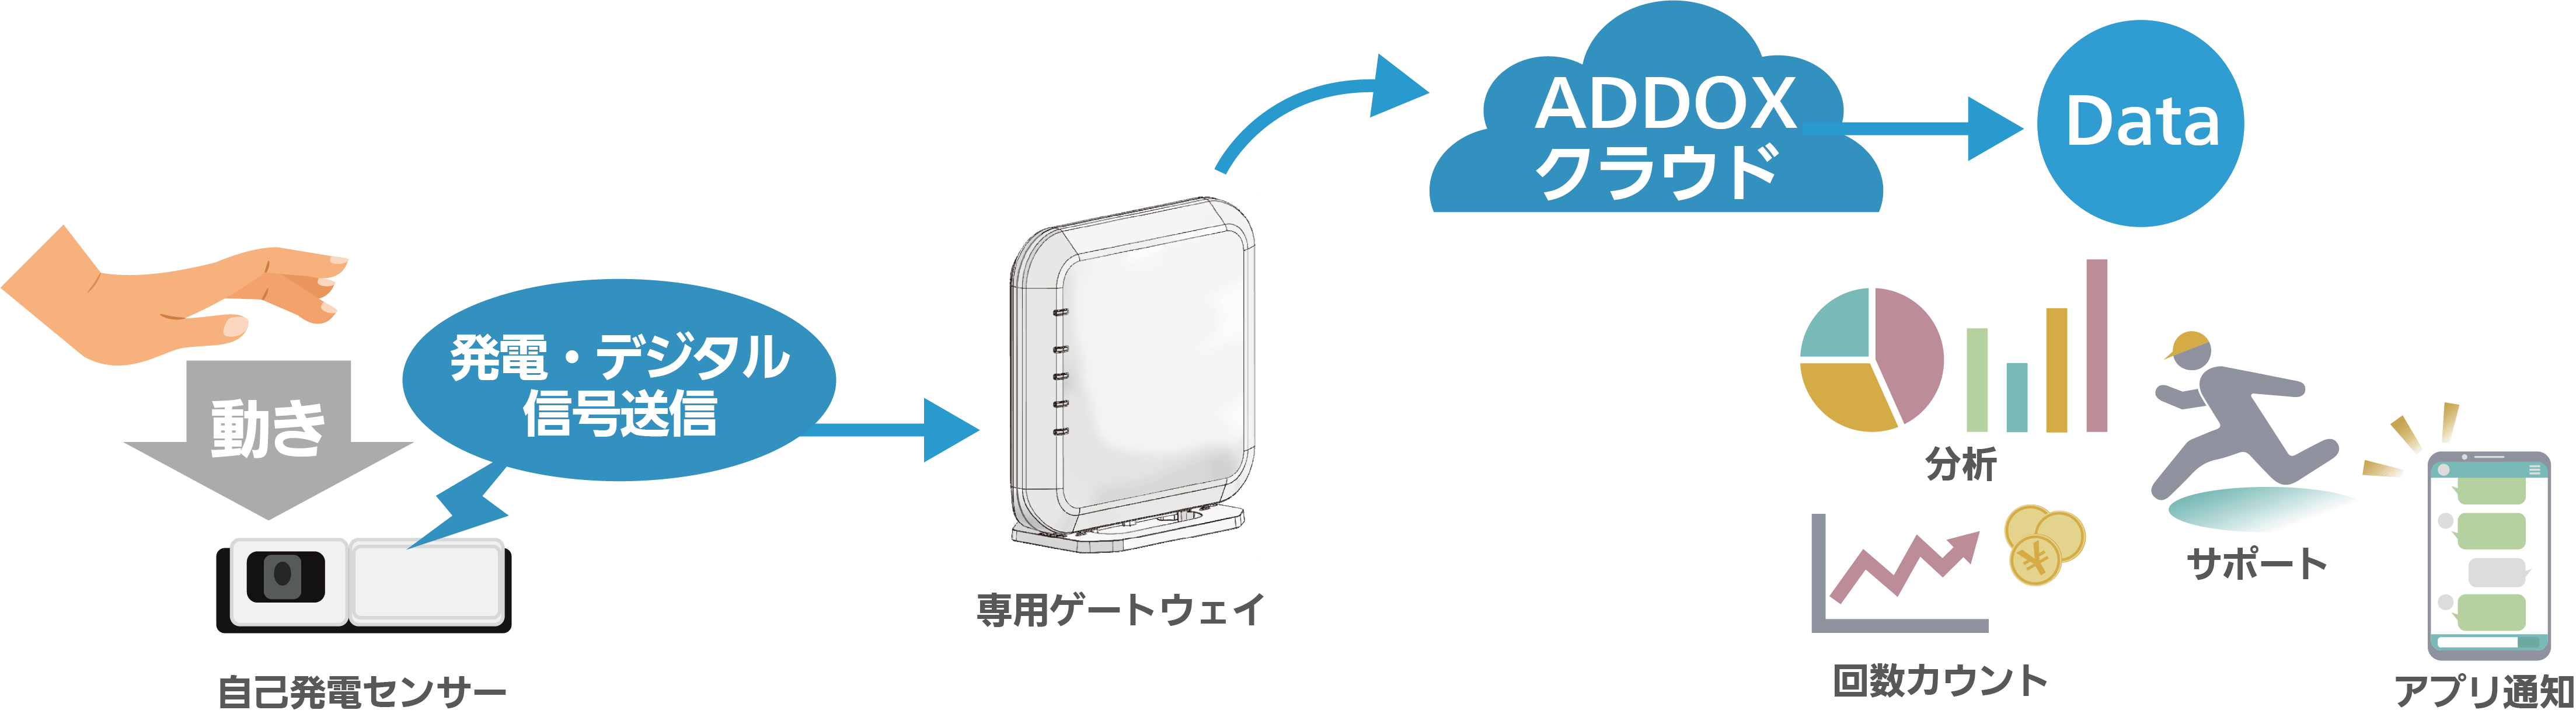 ADDOXの仕組み。押す・回すといった動きを利⽤して発電し、データを送信。データでどのモノ（センサー）がいつ動いたか、わかります。